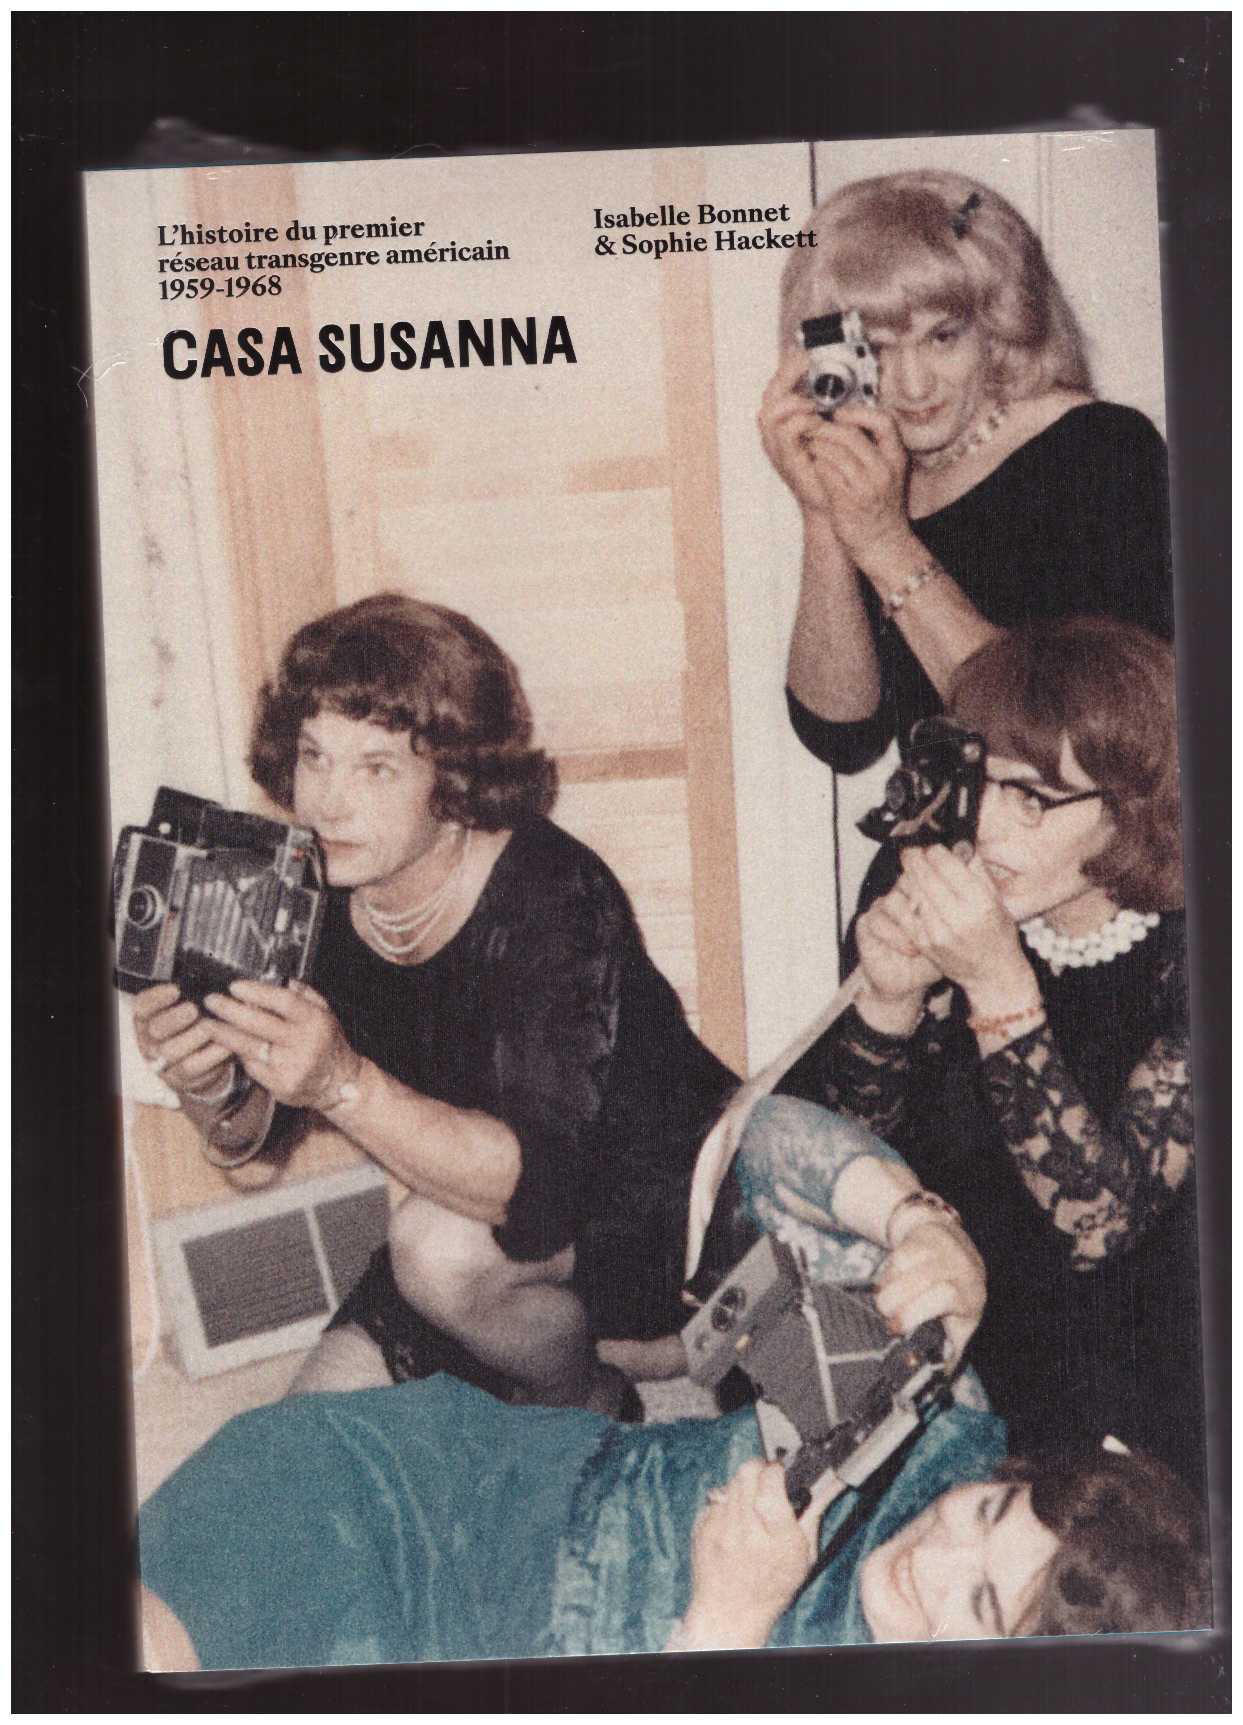 BONNET, Isabelle; HACKETT, Sophie (eds.) - Casa Susanna. L’histoire du premier réseau transgenre américain 1959-1968